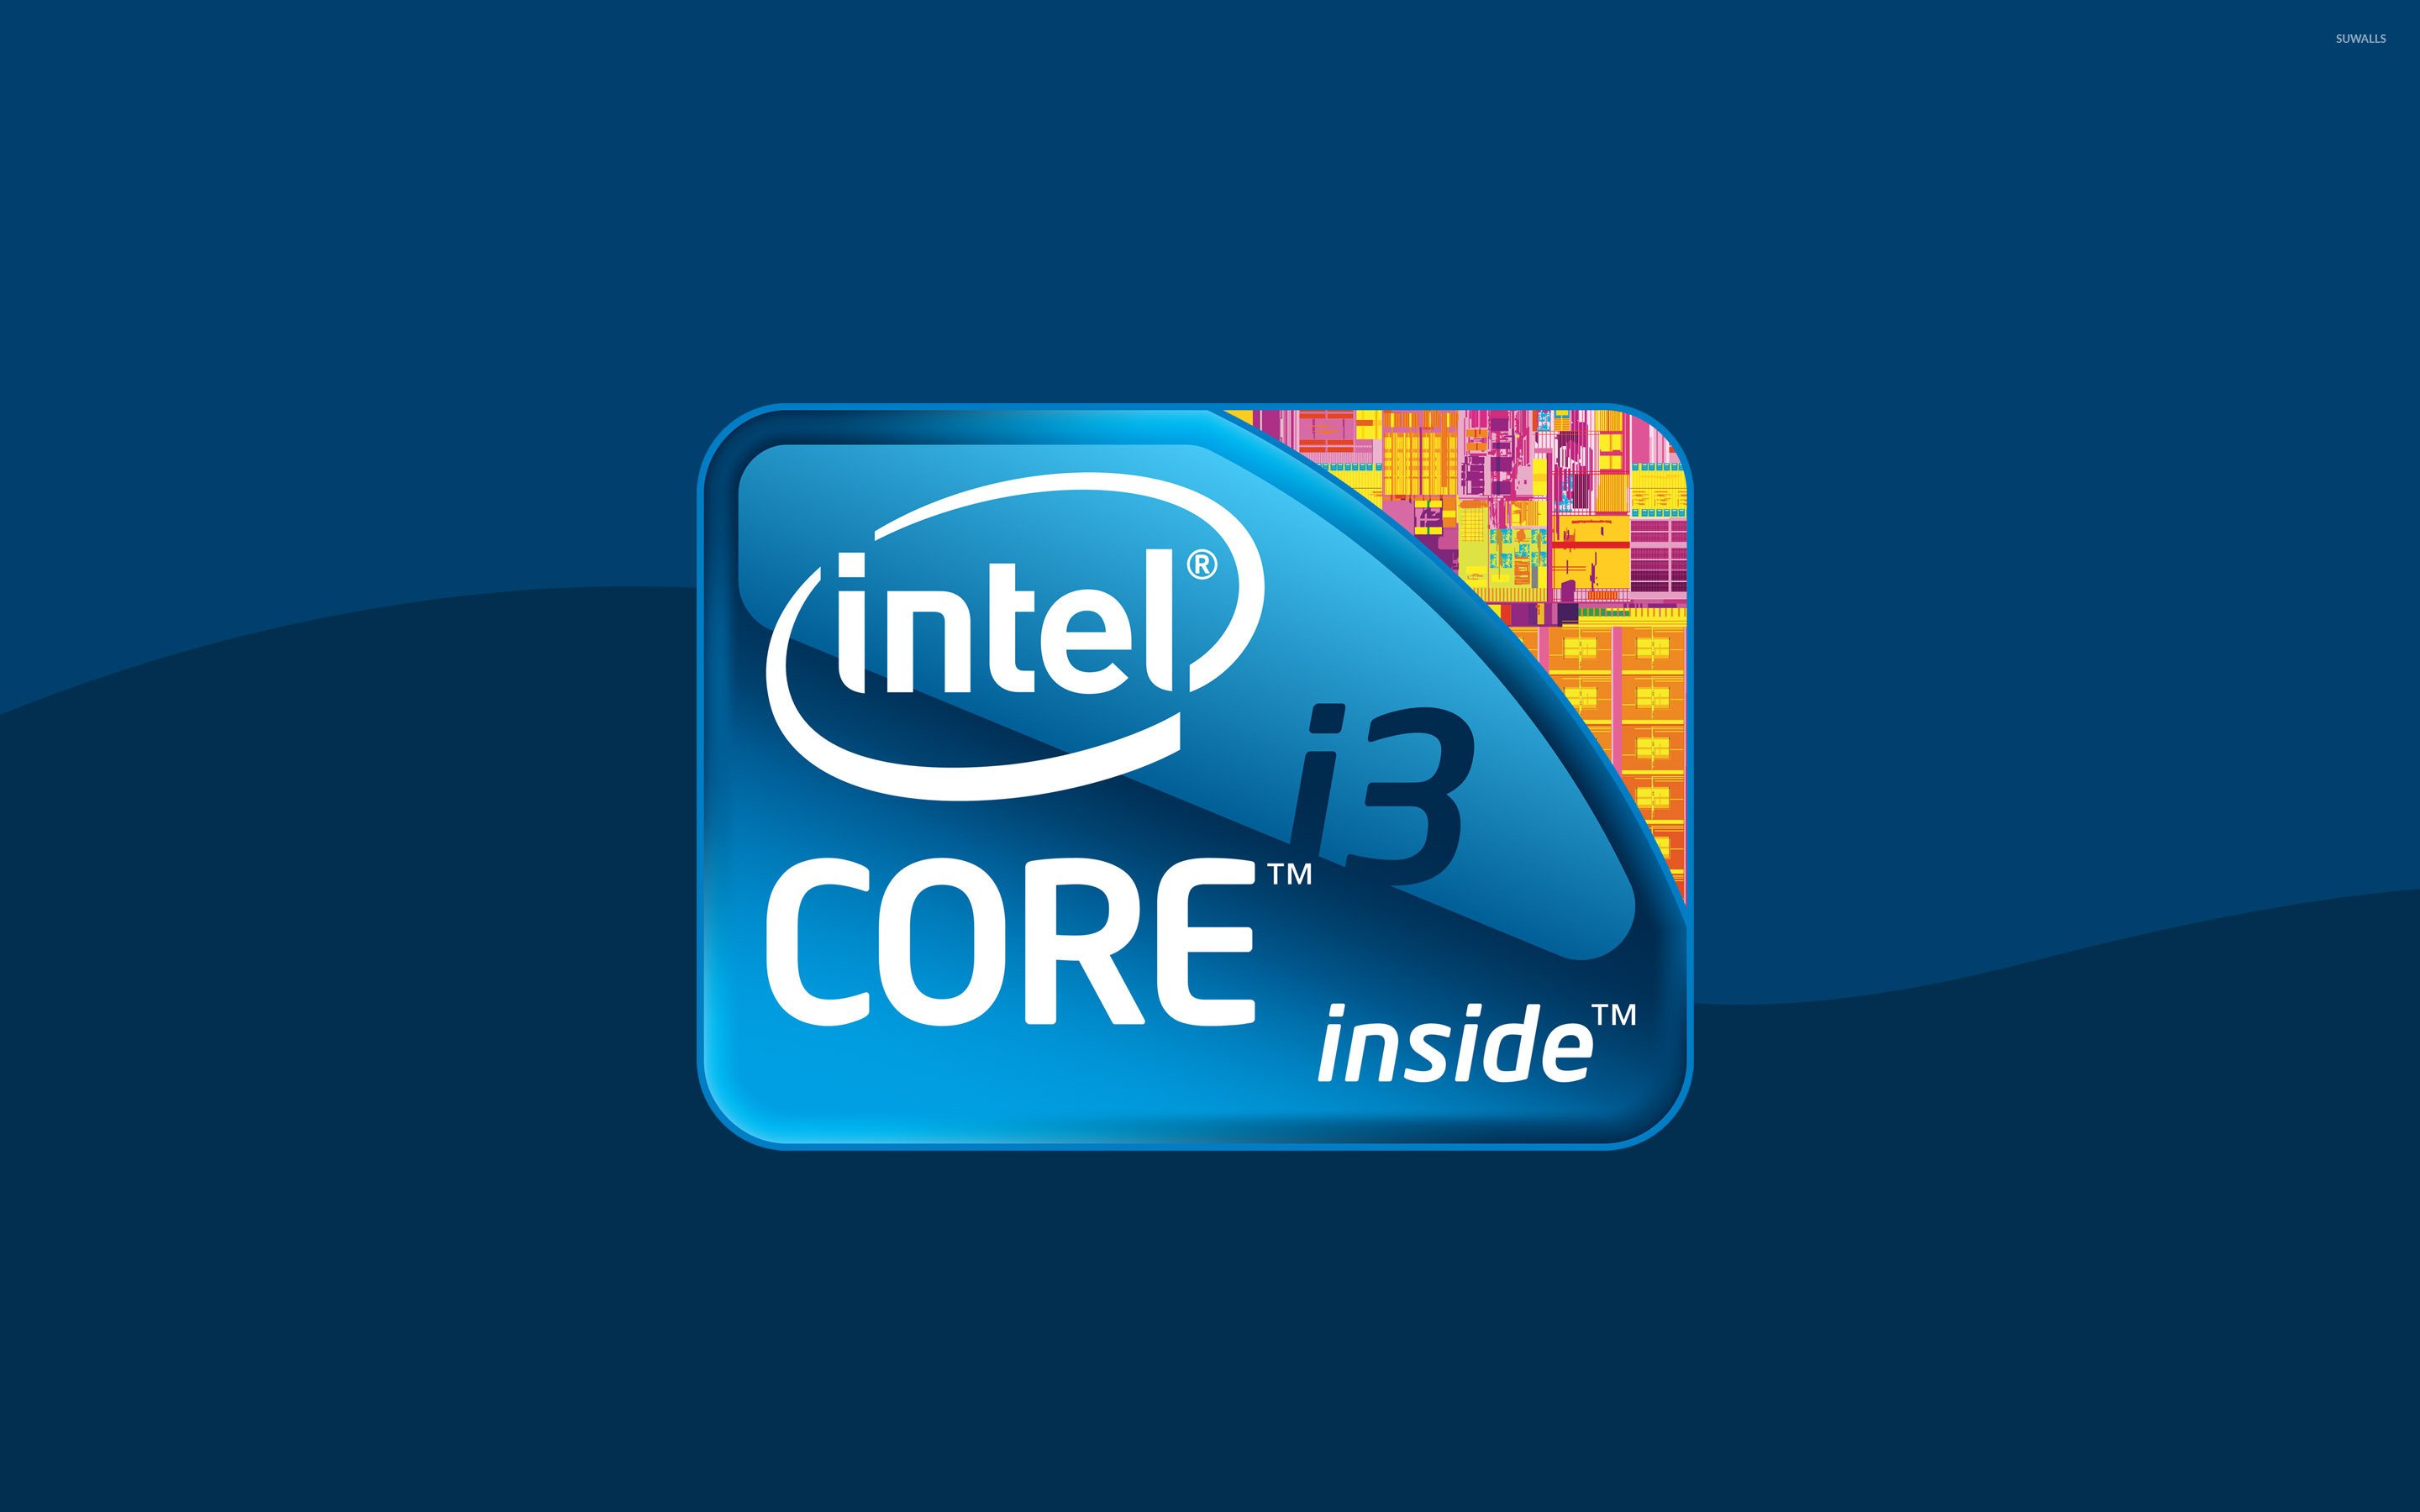 Intel Core i3 wallpaper   Computer wallpapers   27724